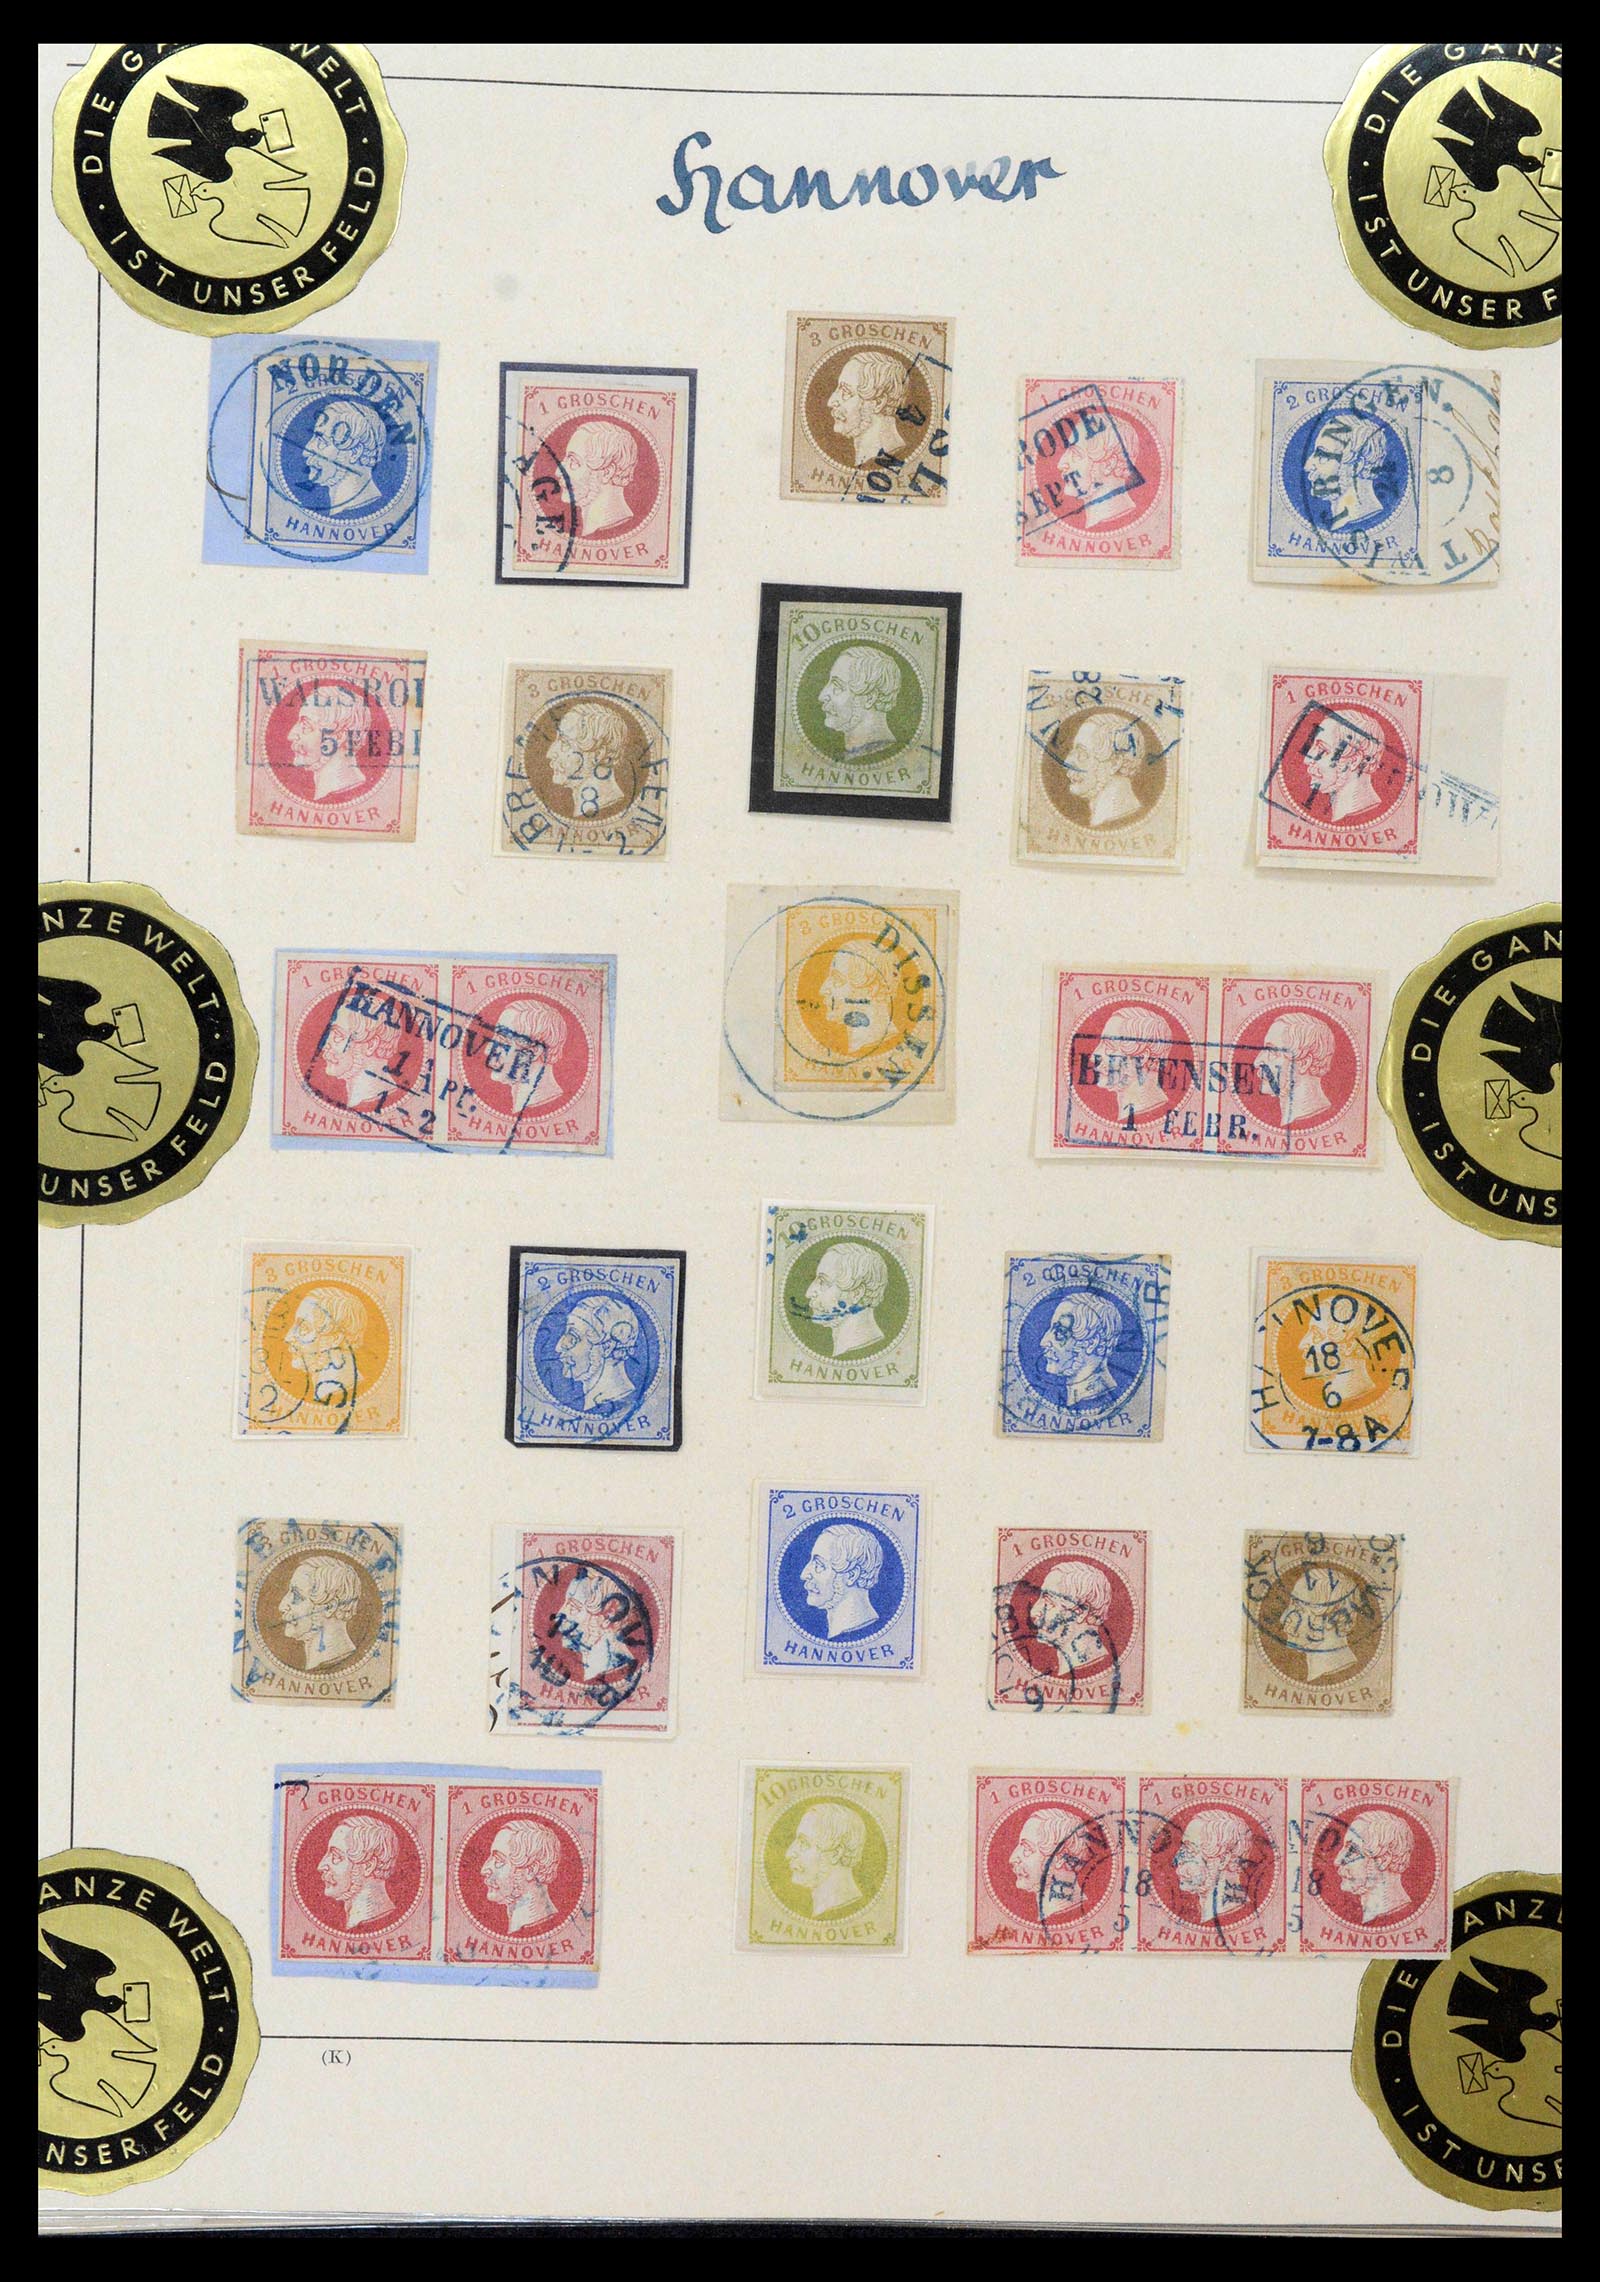 39200 0015 - Postzegelverzameling 39200 Hannover SUPER verzameling 1850-1864.